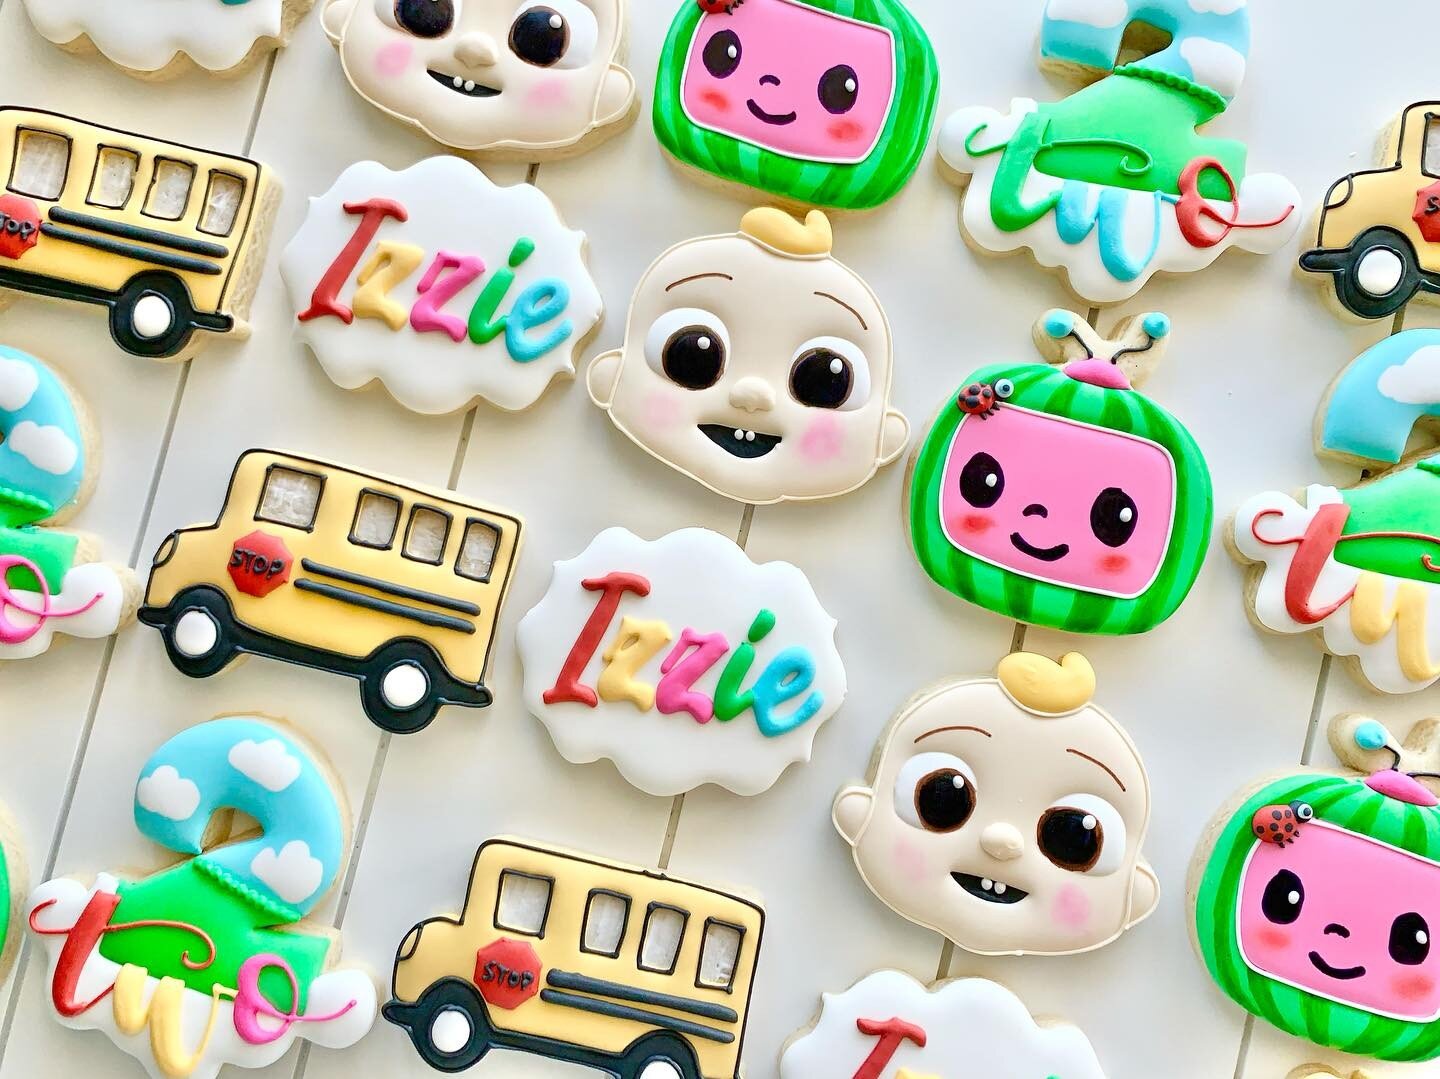 Cocomelon 🍉 
.
.
.
.
.
#cocomelon #cocomelonparty #cocomeloncookies #schoolbus #babyjj #2ndbirthday #happybirthday #birthdaycookies #sugarcookies #decoratedsugarcookies #cookies
#tampa #tampasugarcookies #tampacookies #tampabay #tampabaker